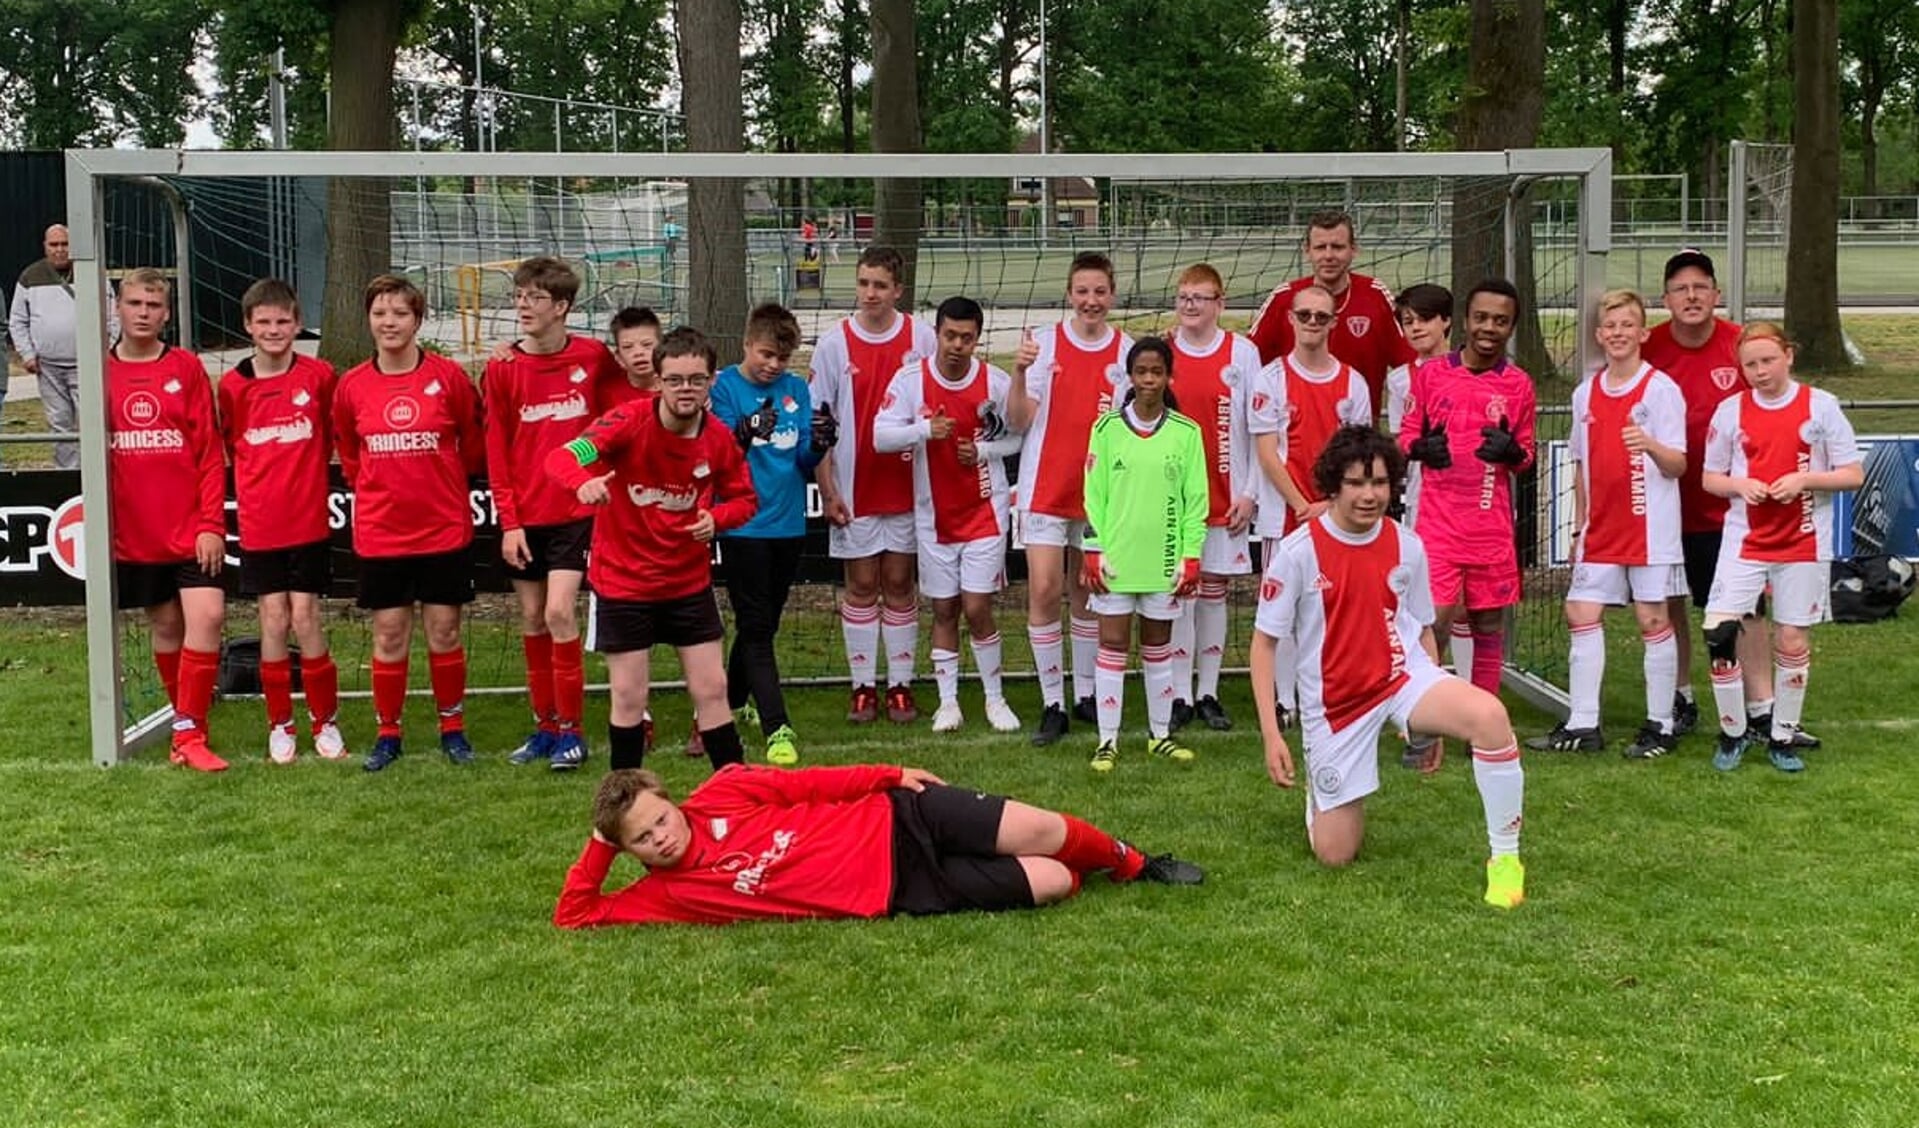 Only Friends Ajax kwam tegen het G-team van Loenermark spelen